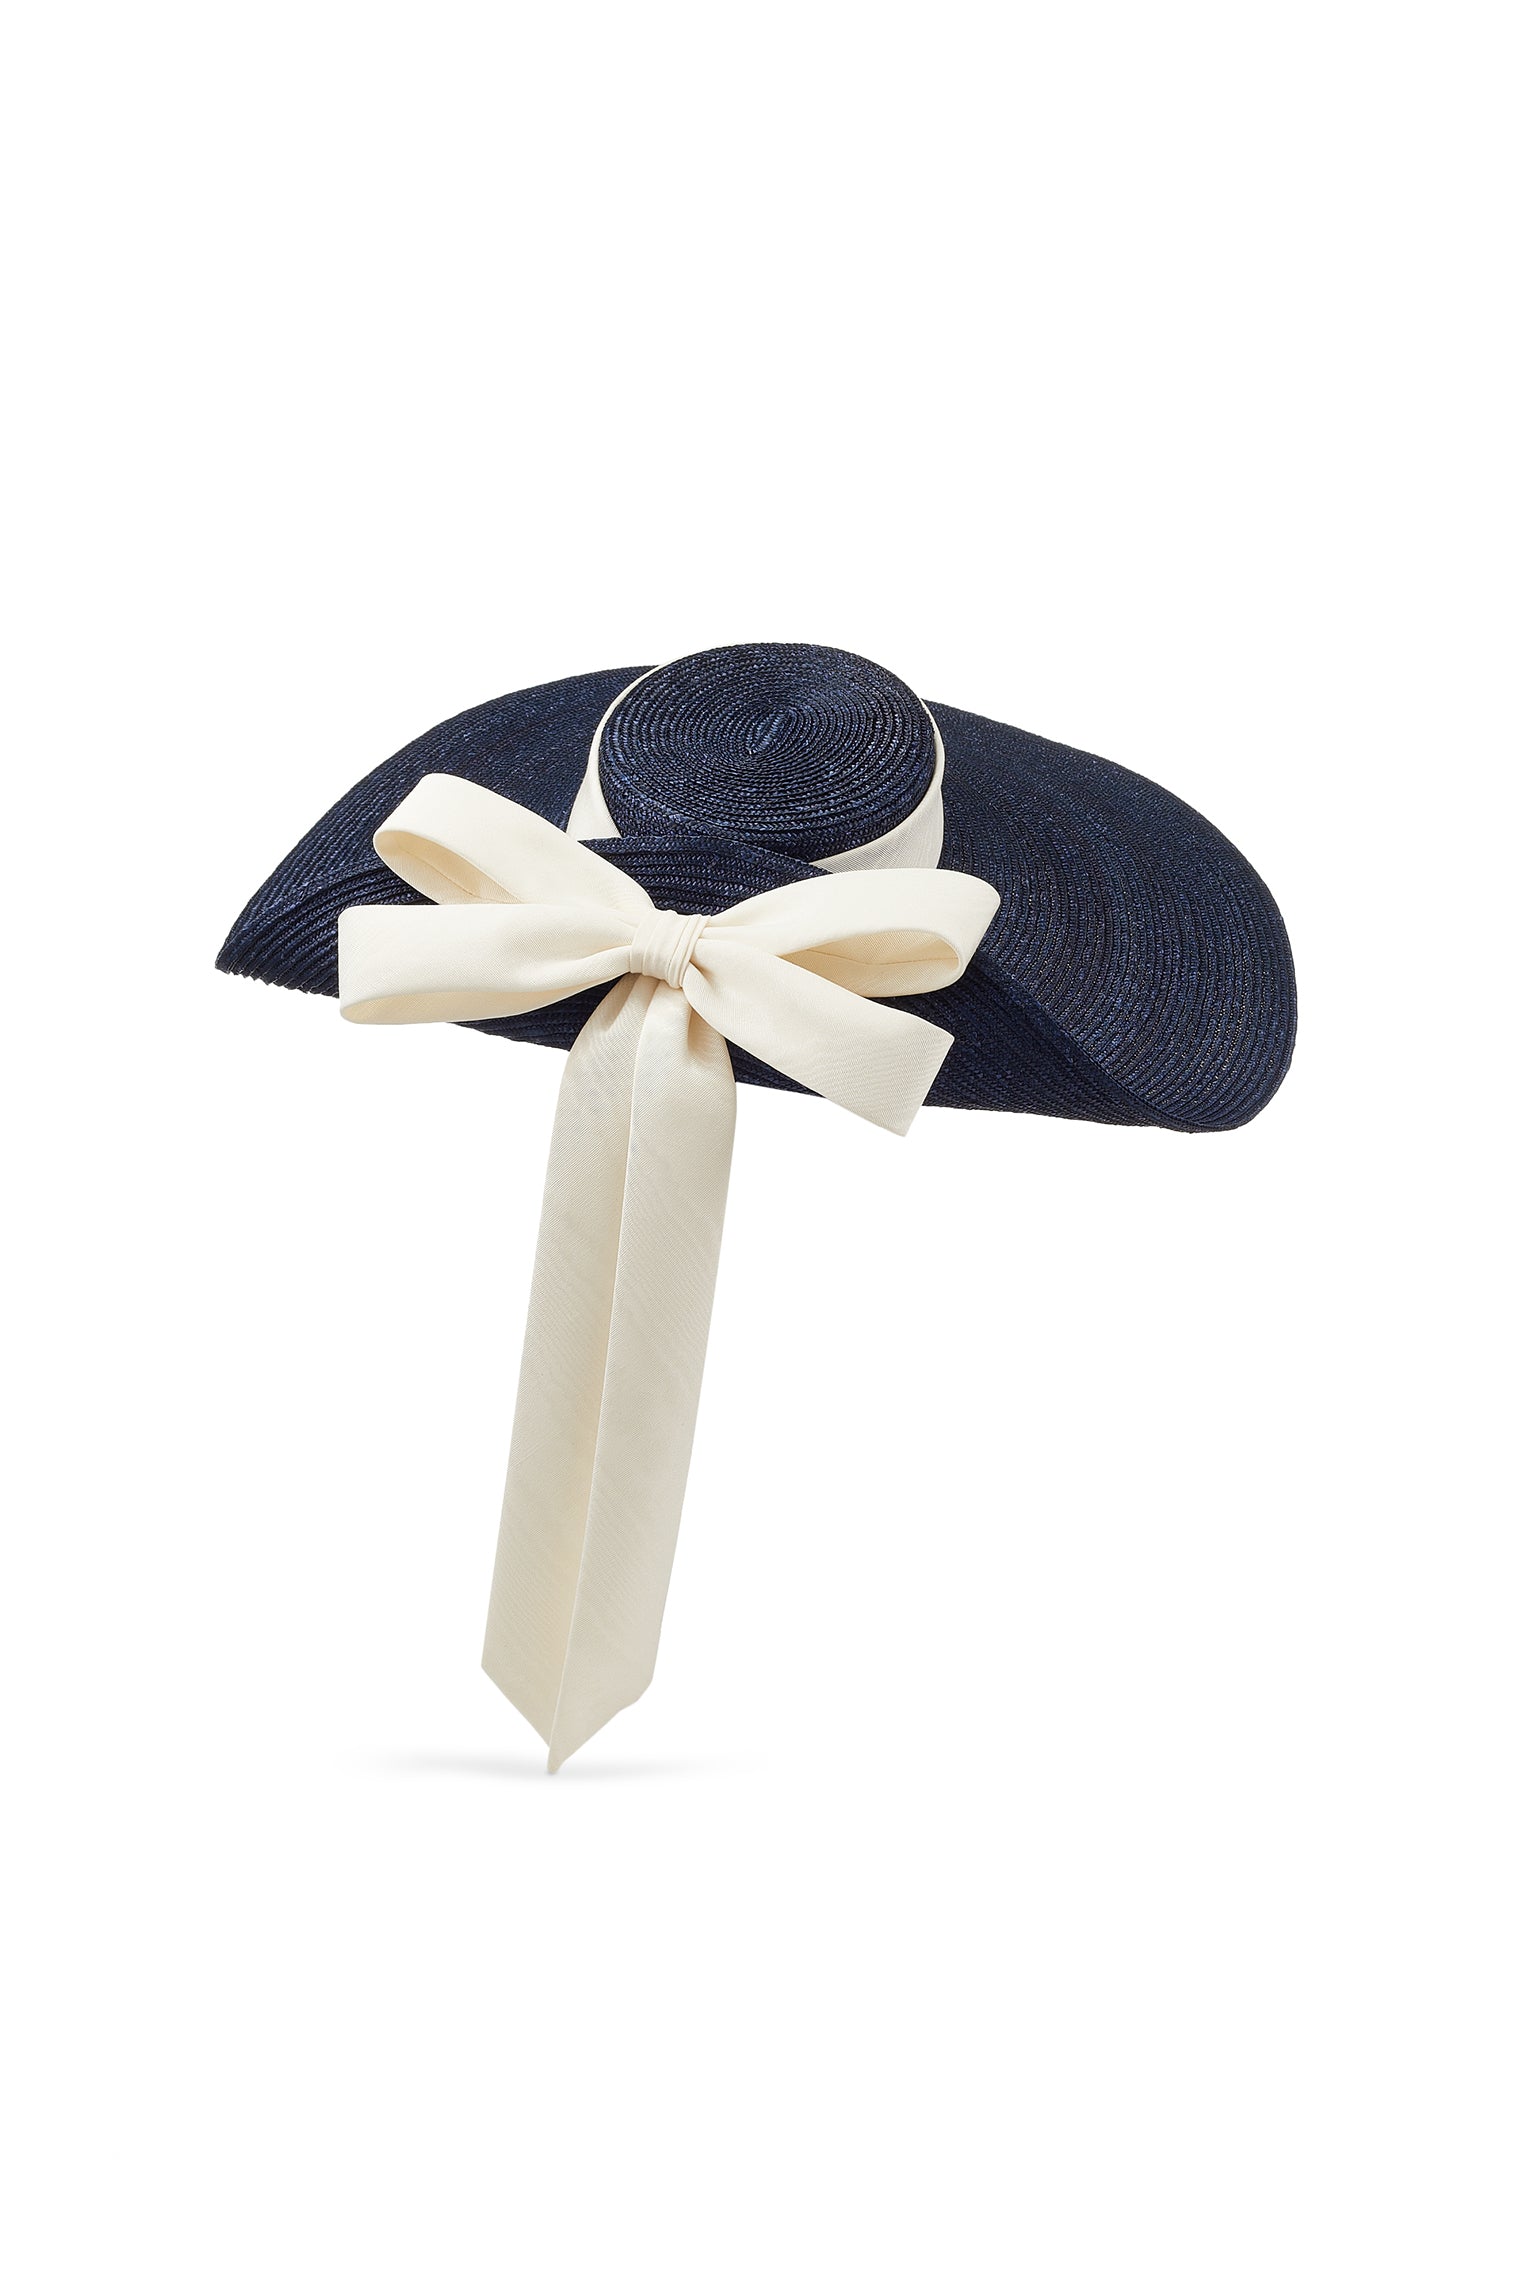 Lady Grey Navy Wide Brim Hat - New Season Women's Hats - Lock & Co. Hatters London UK